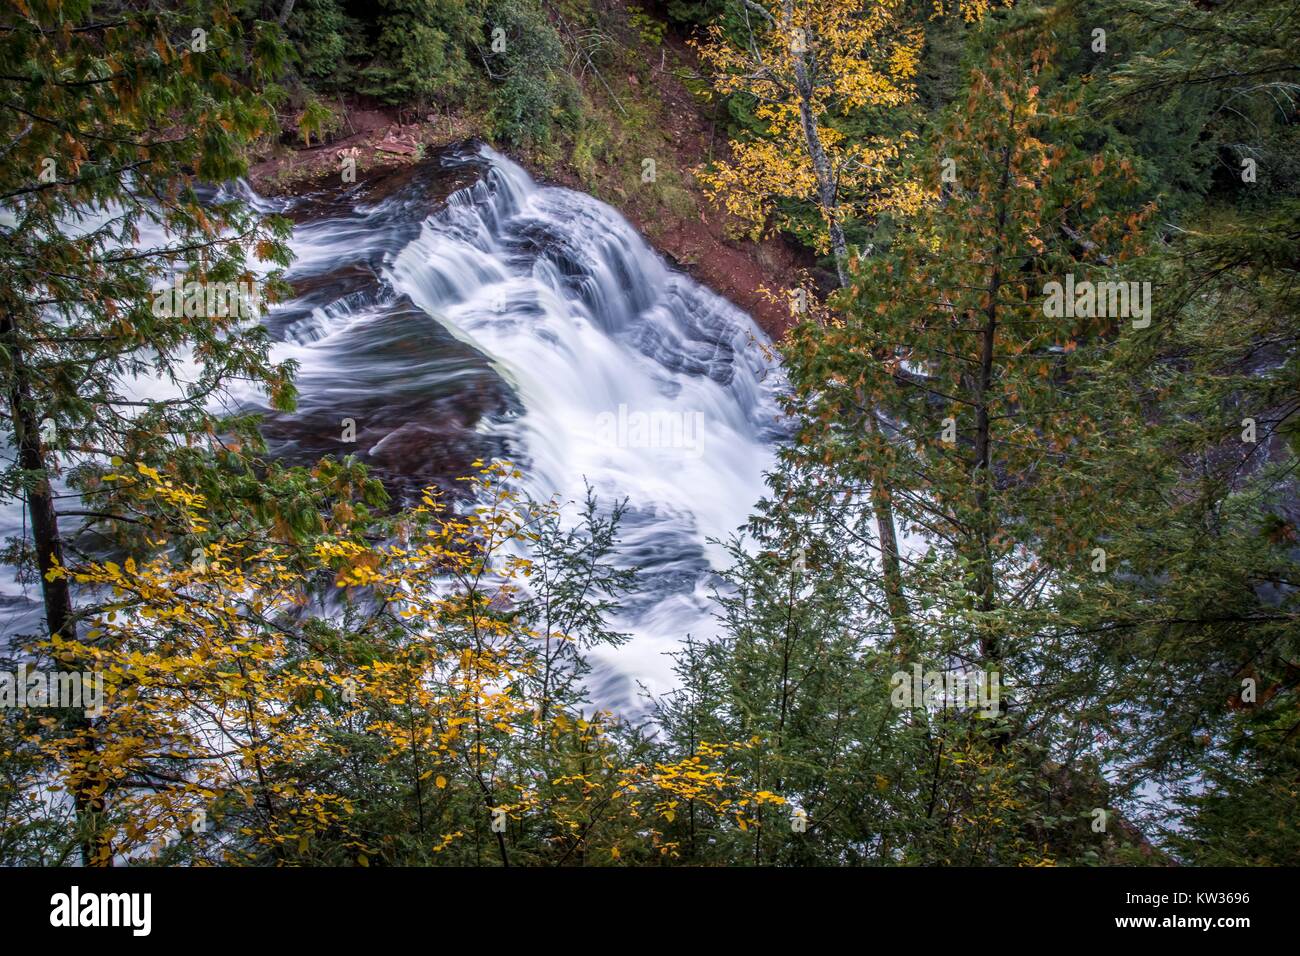 Michigan der oberen Halbinsel Herbst Wasserfall Landschaft. Achat fällt in der Oberen Halbinsel von Michigan von schönen Herbst Laub umgeben. Stockfoto